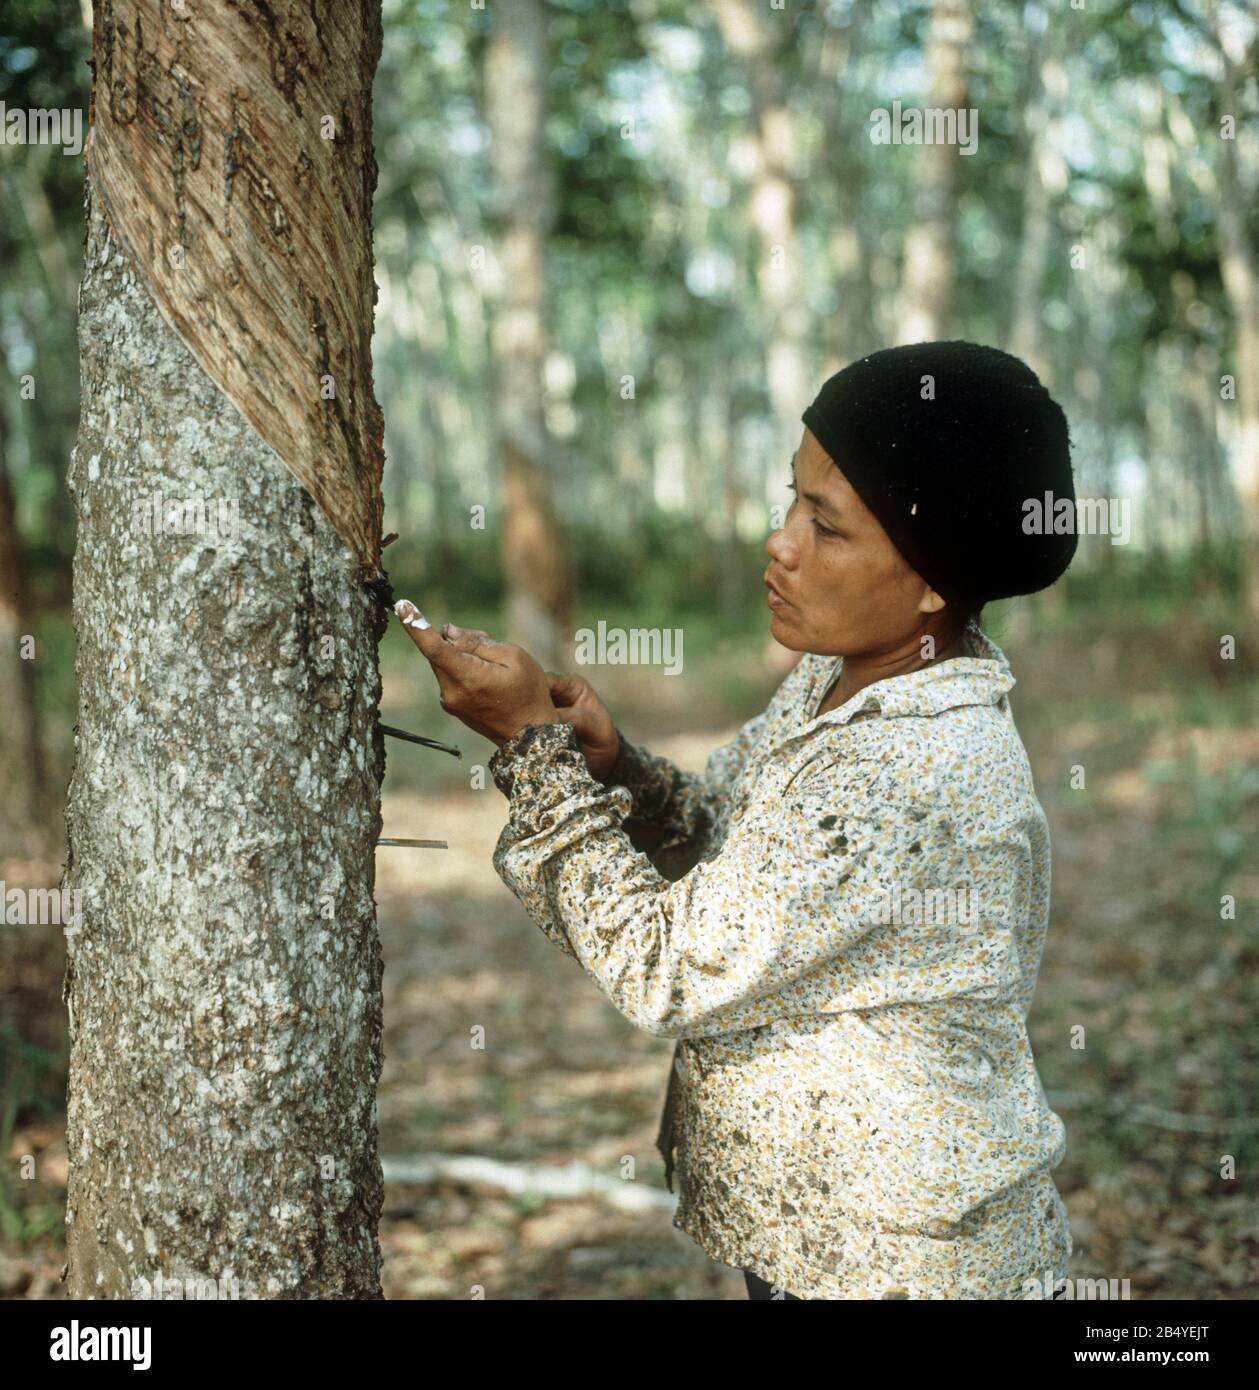 Frau, die einen abgewinkelten Schnitt durch die Rinde eines Gummibaums macht, um in die Latexgefäße in der Rinde eines Gummibaums, Malaysia, Februar, zu klopfen Stockfoto